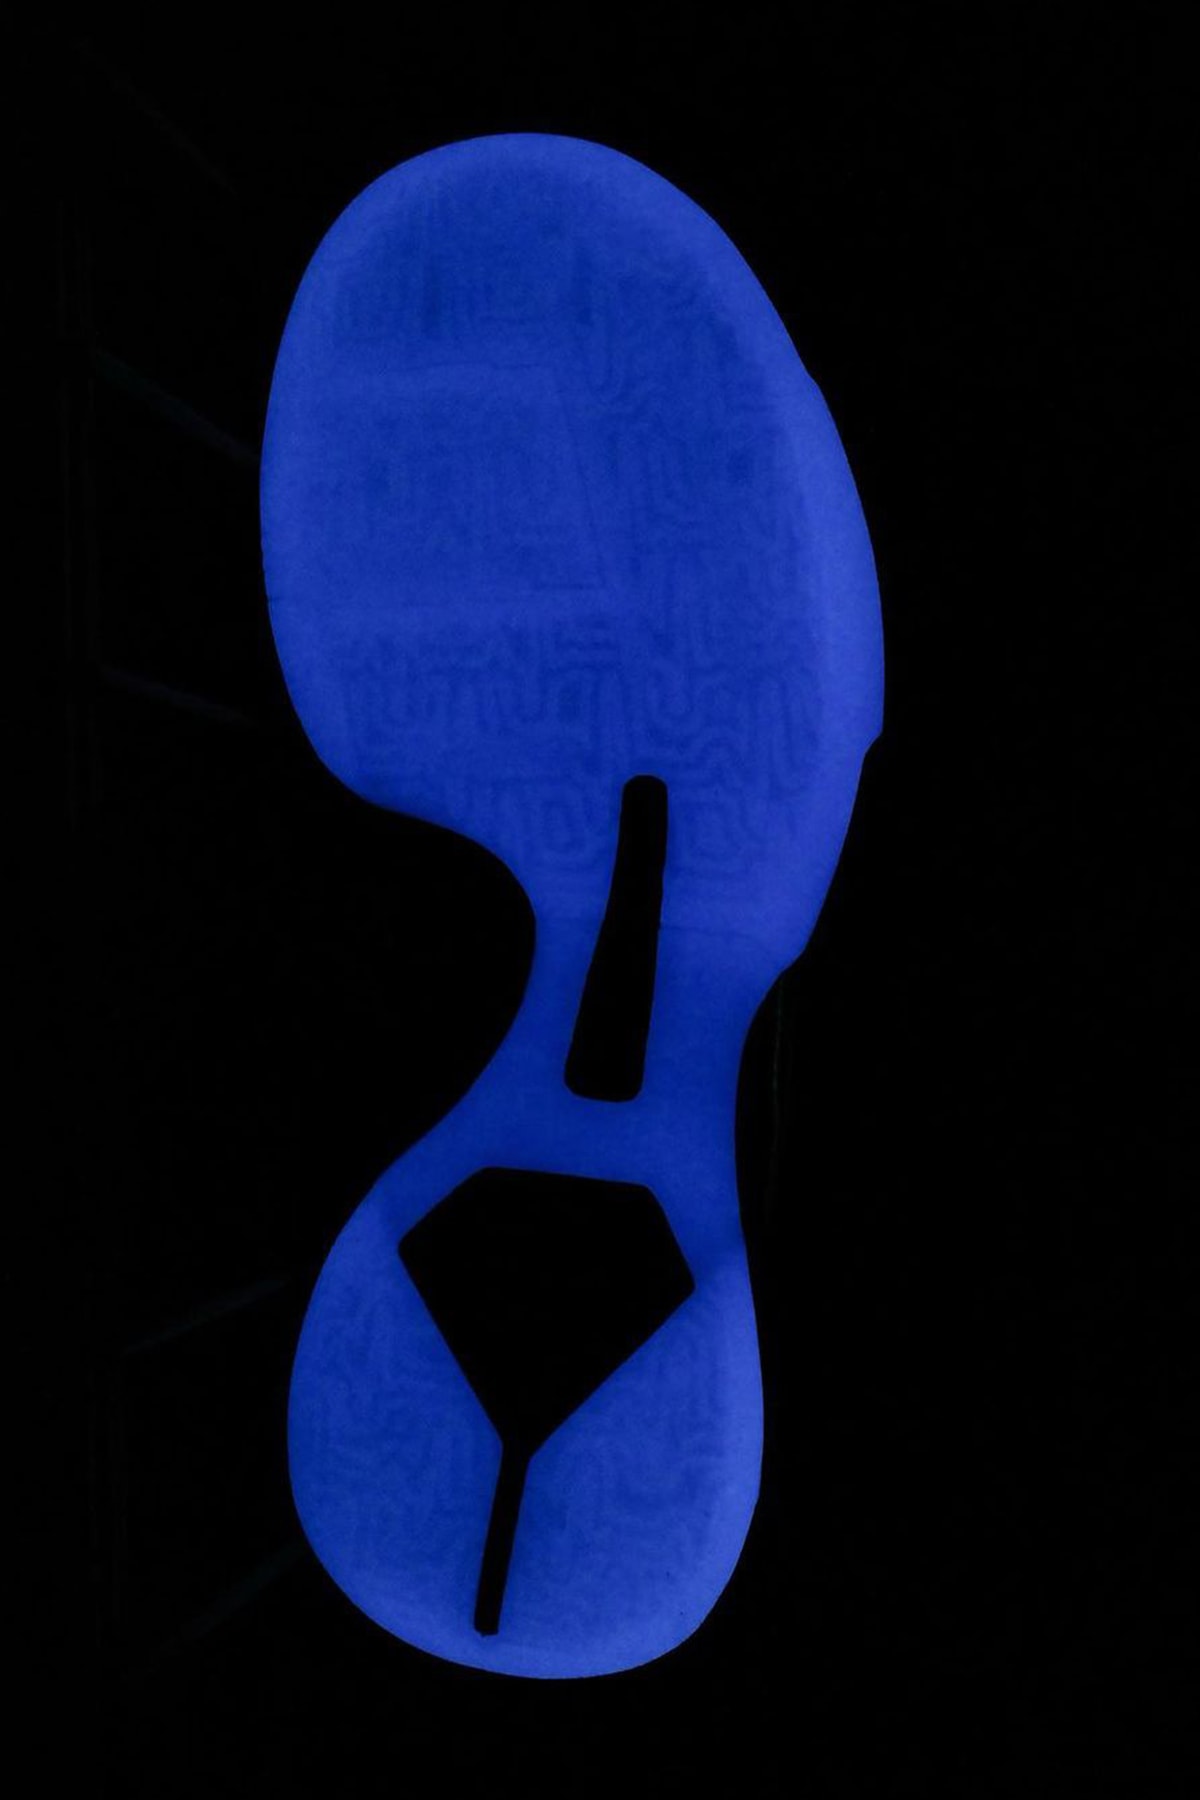 ナイキからコービー・ブライアントのレントゲン写真を用いた Kobe 5 Protro “X-Ray” がスタンバイ Nike Kobe 5 Protro “X-Ray” first look, VANESSA BRYANT